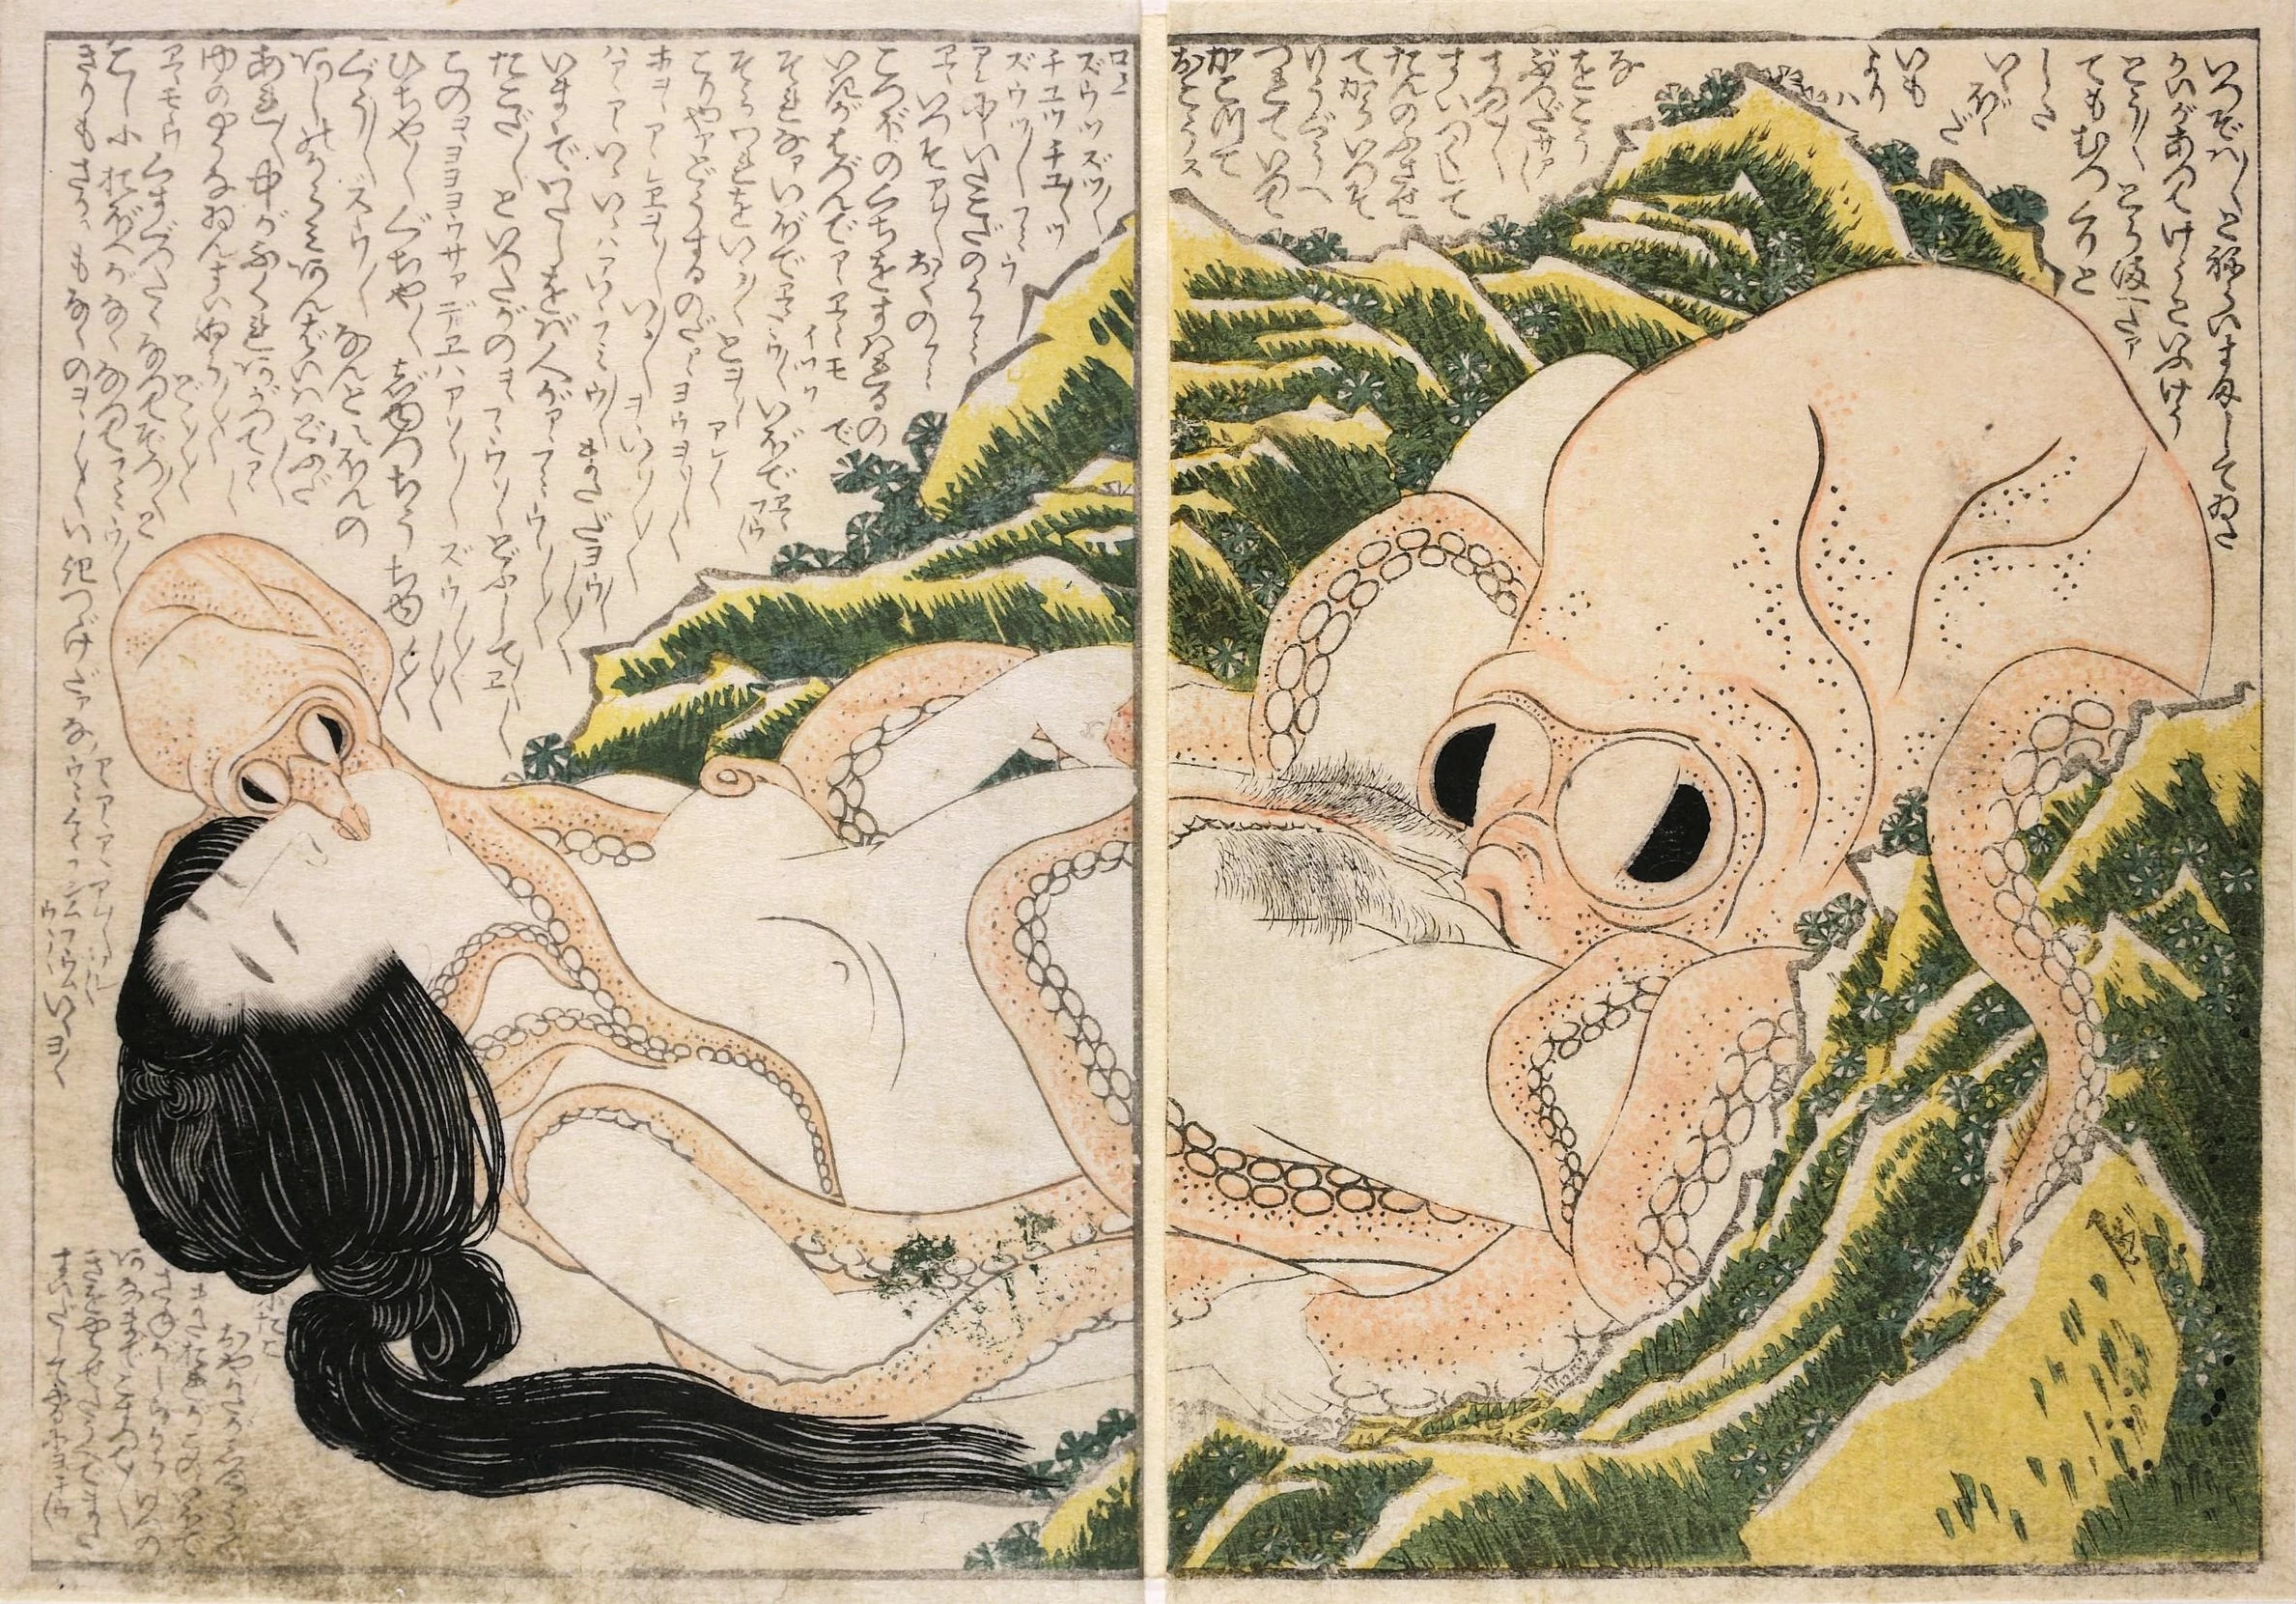 The Dream of the Fisherman's Wife, Katsushika Hokusai